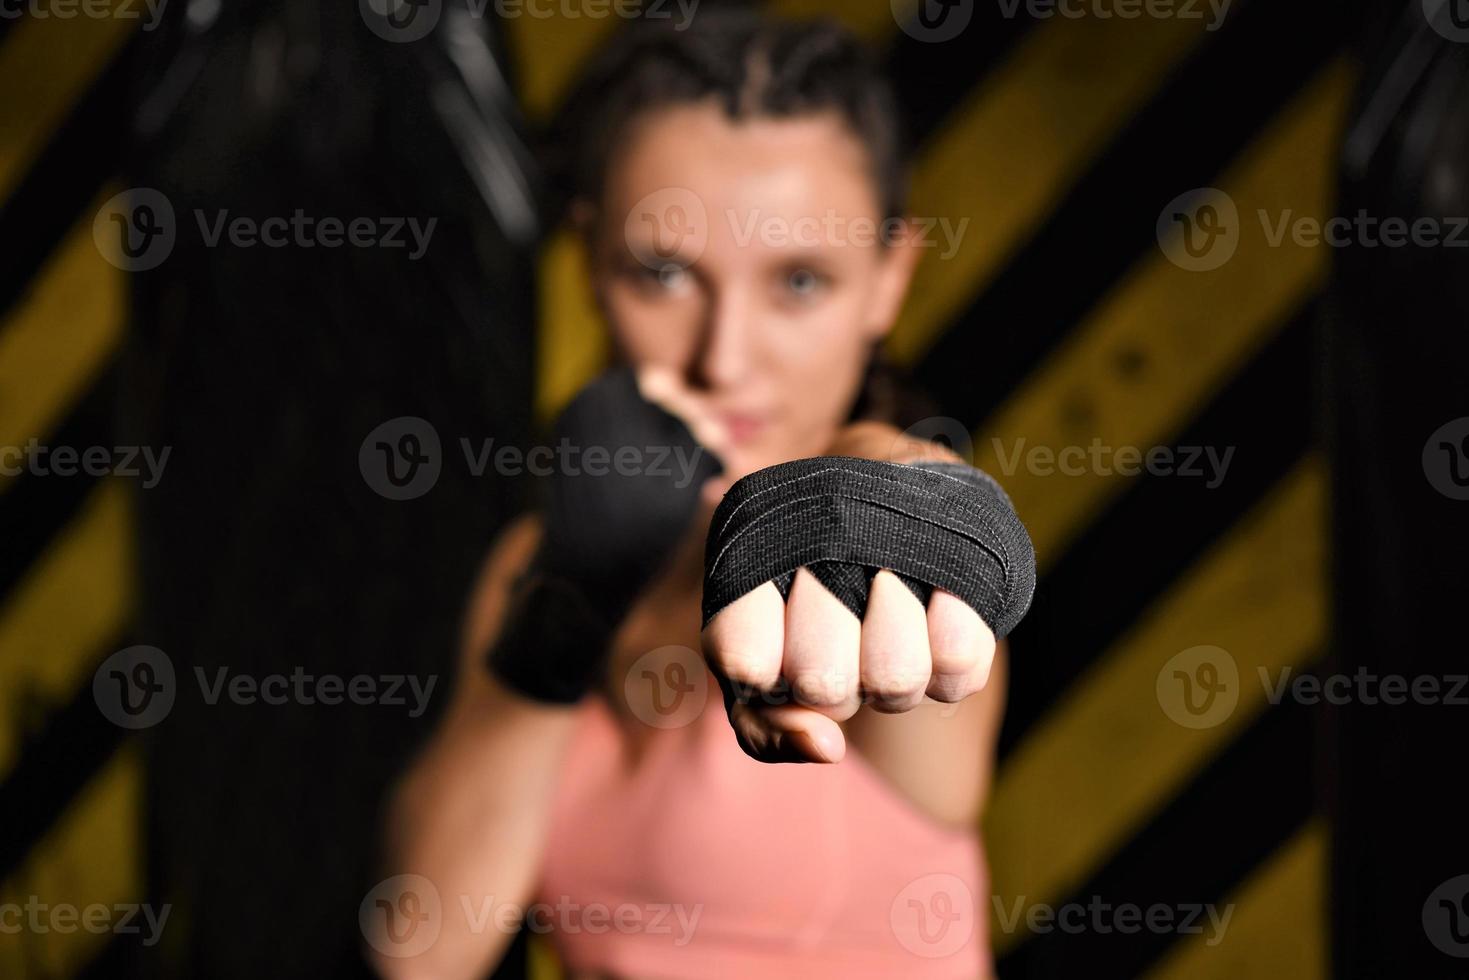 mma frau kämpfer zäh küken boxer schlag posieren hübsch übung training cross fit athlet foto